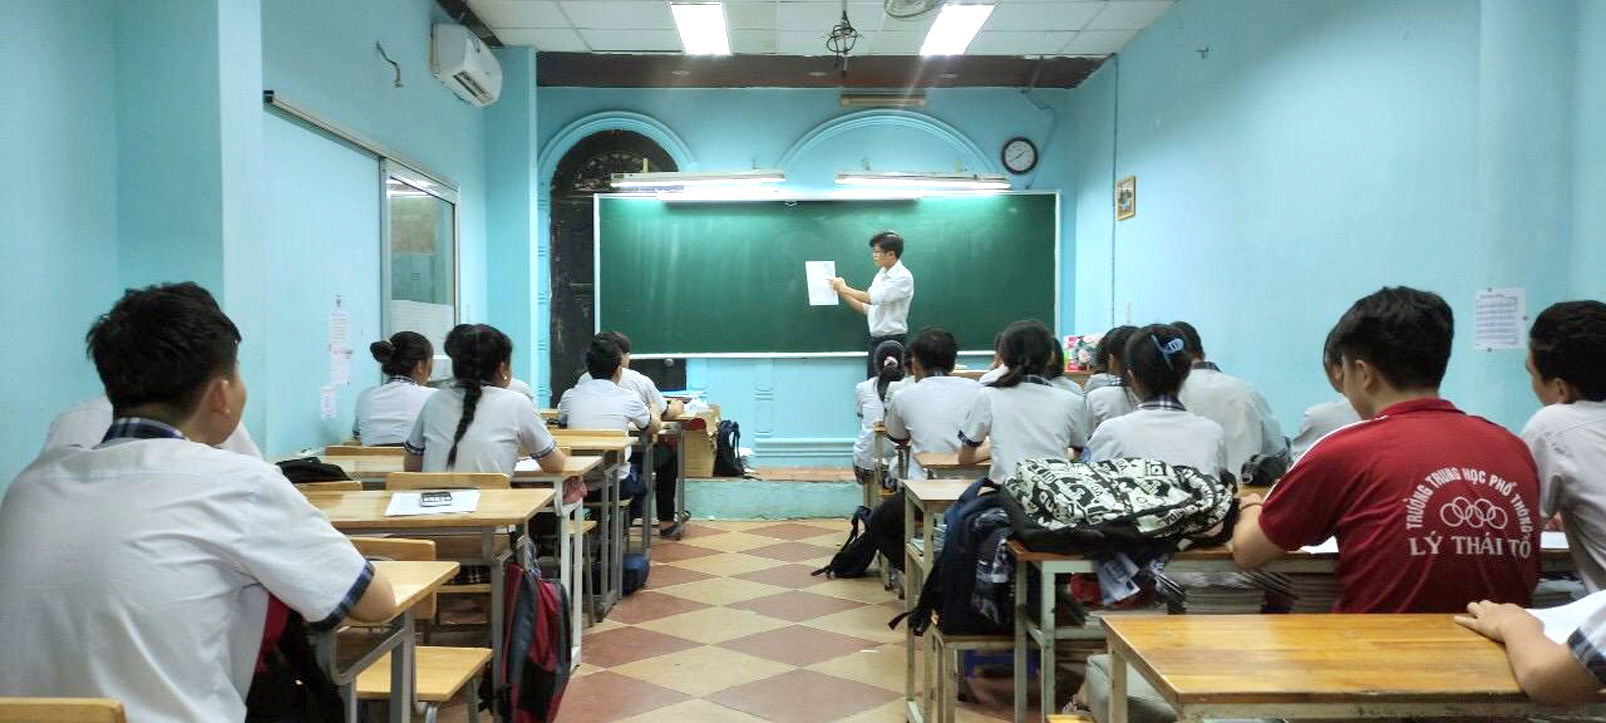 Học sinh Trường THPT Lý Thái Tổ ôn thi trước khi có quy định ngừng các hoạt động giáo dục tập trung 